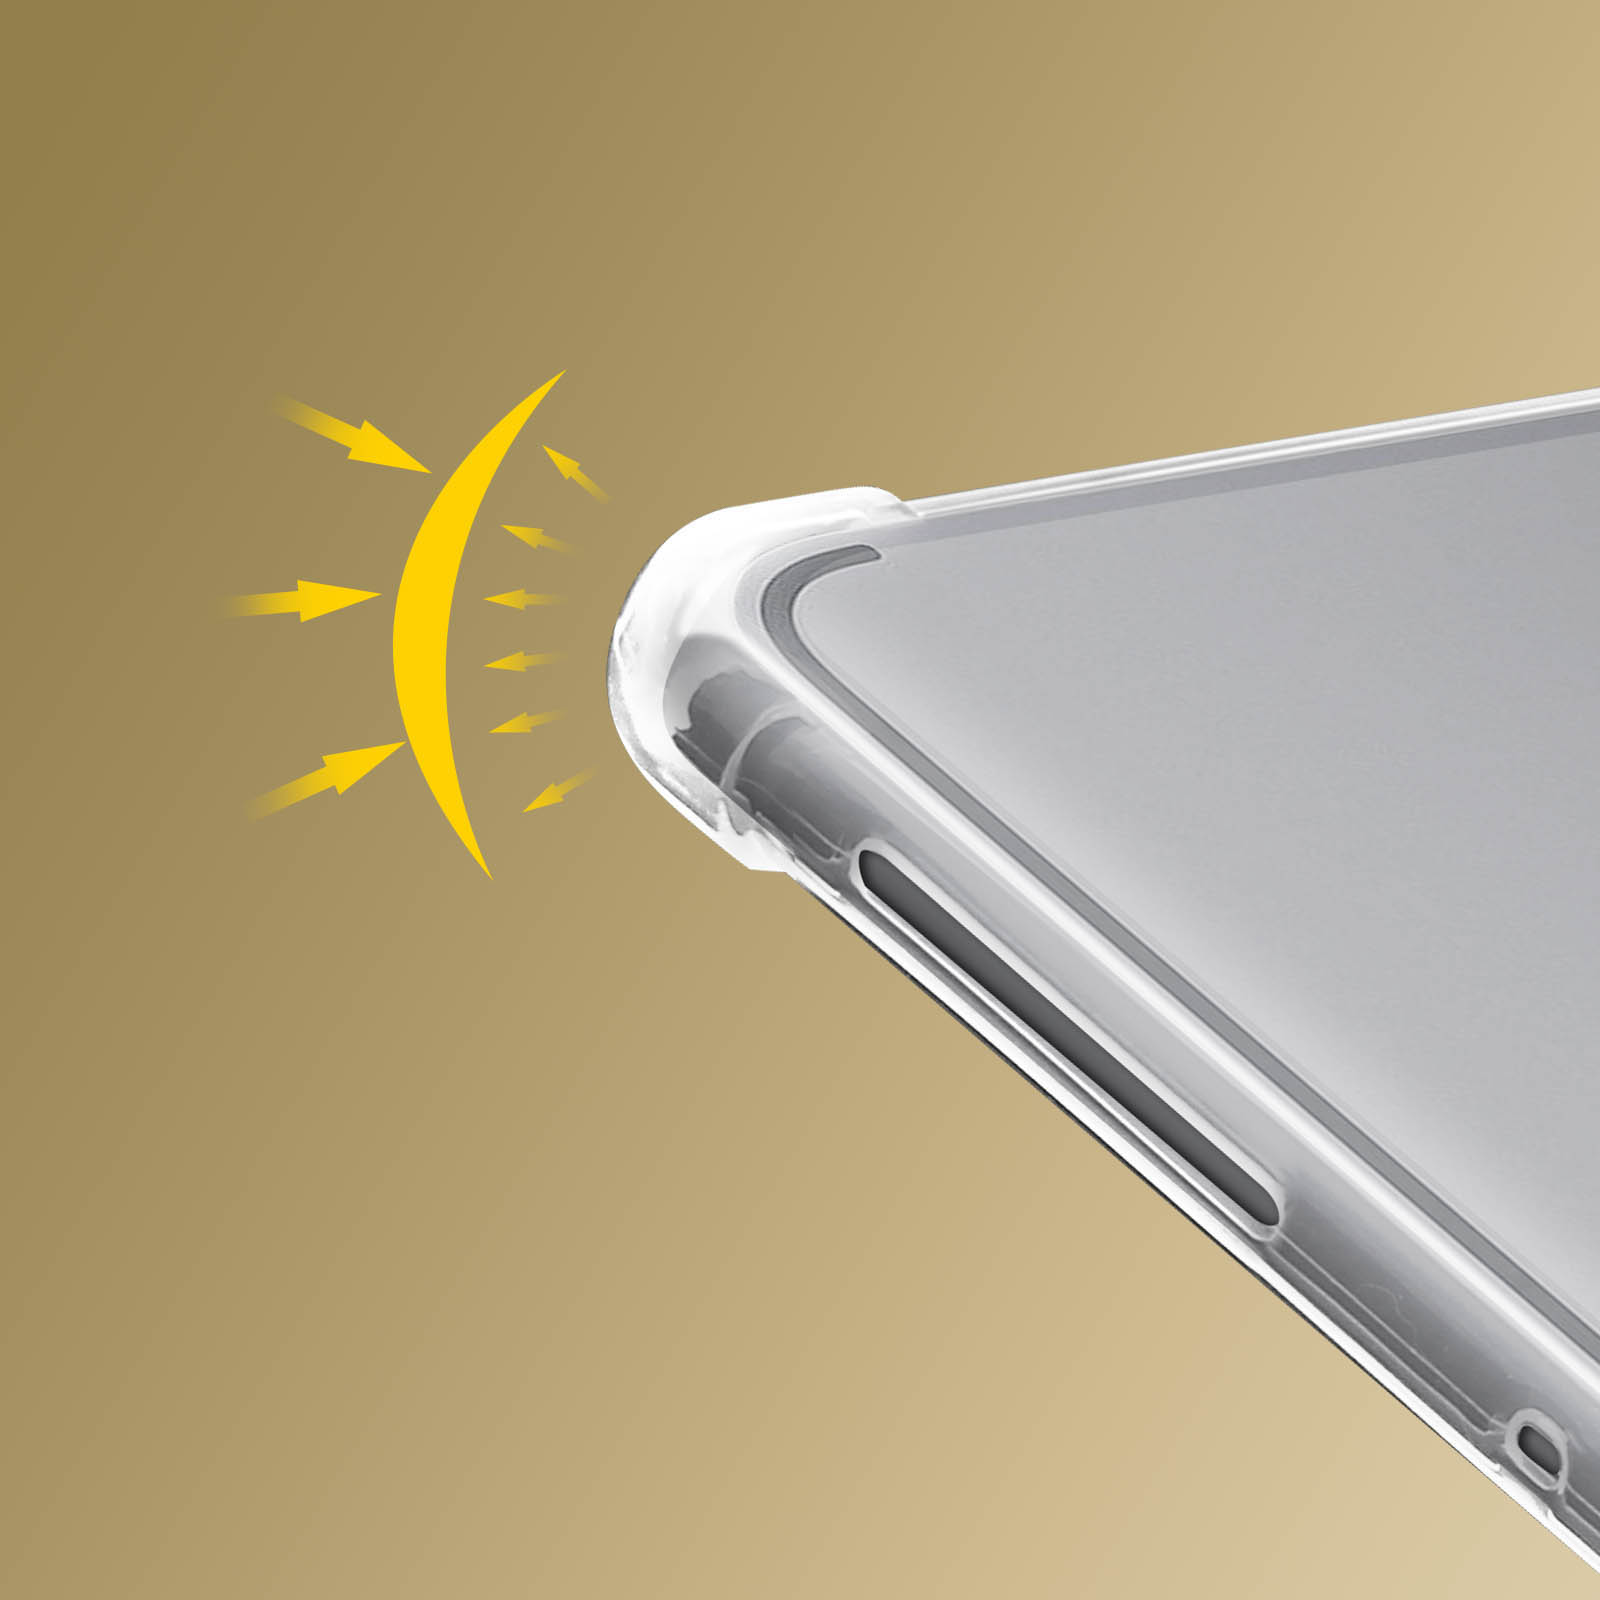 AVIZAR Refined Series Schutzhüllen Transparent Apple für Silikongel, Backcover